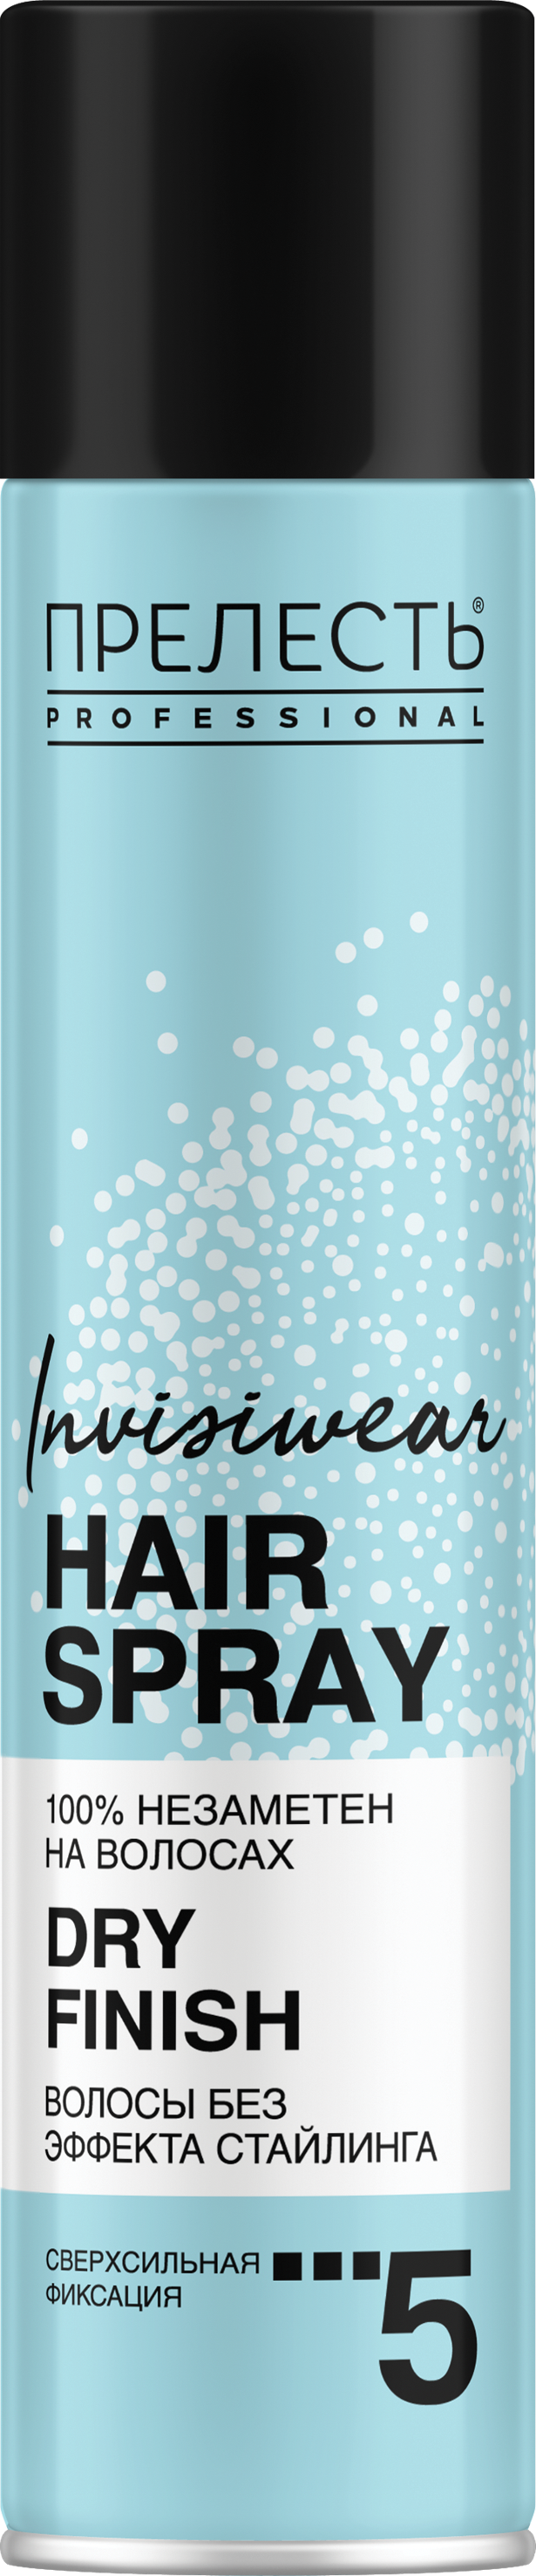 Лак для волос Прелесть Invisiwear Невесомый, сухое распыление, 300 мл ультралегкий сухой лак для волос shaper zero gravity